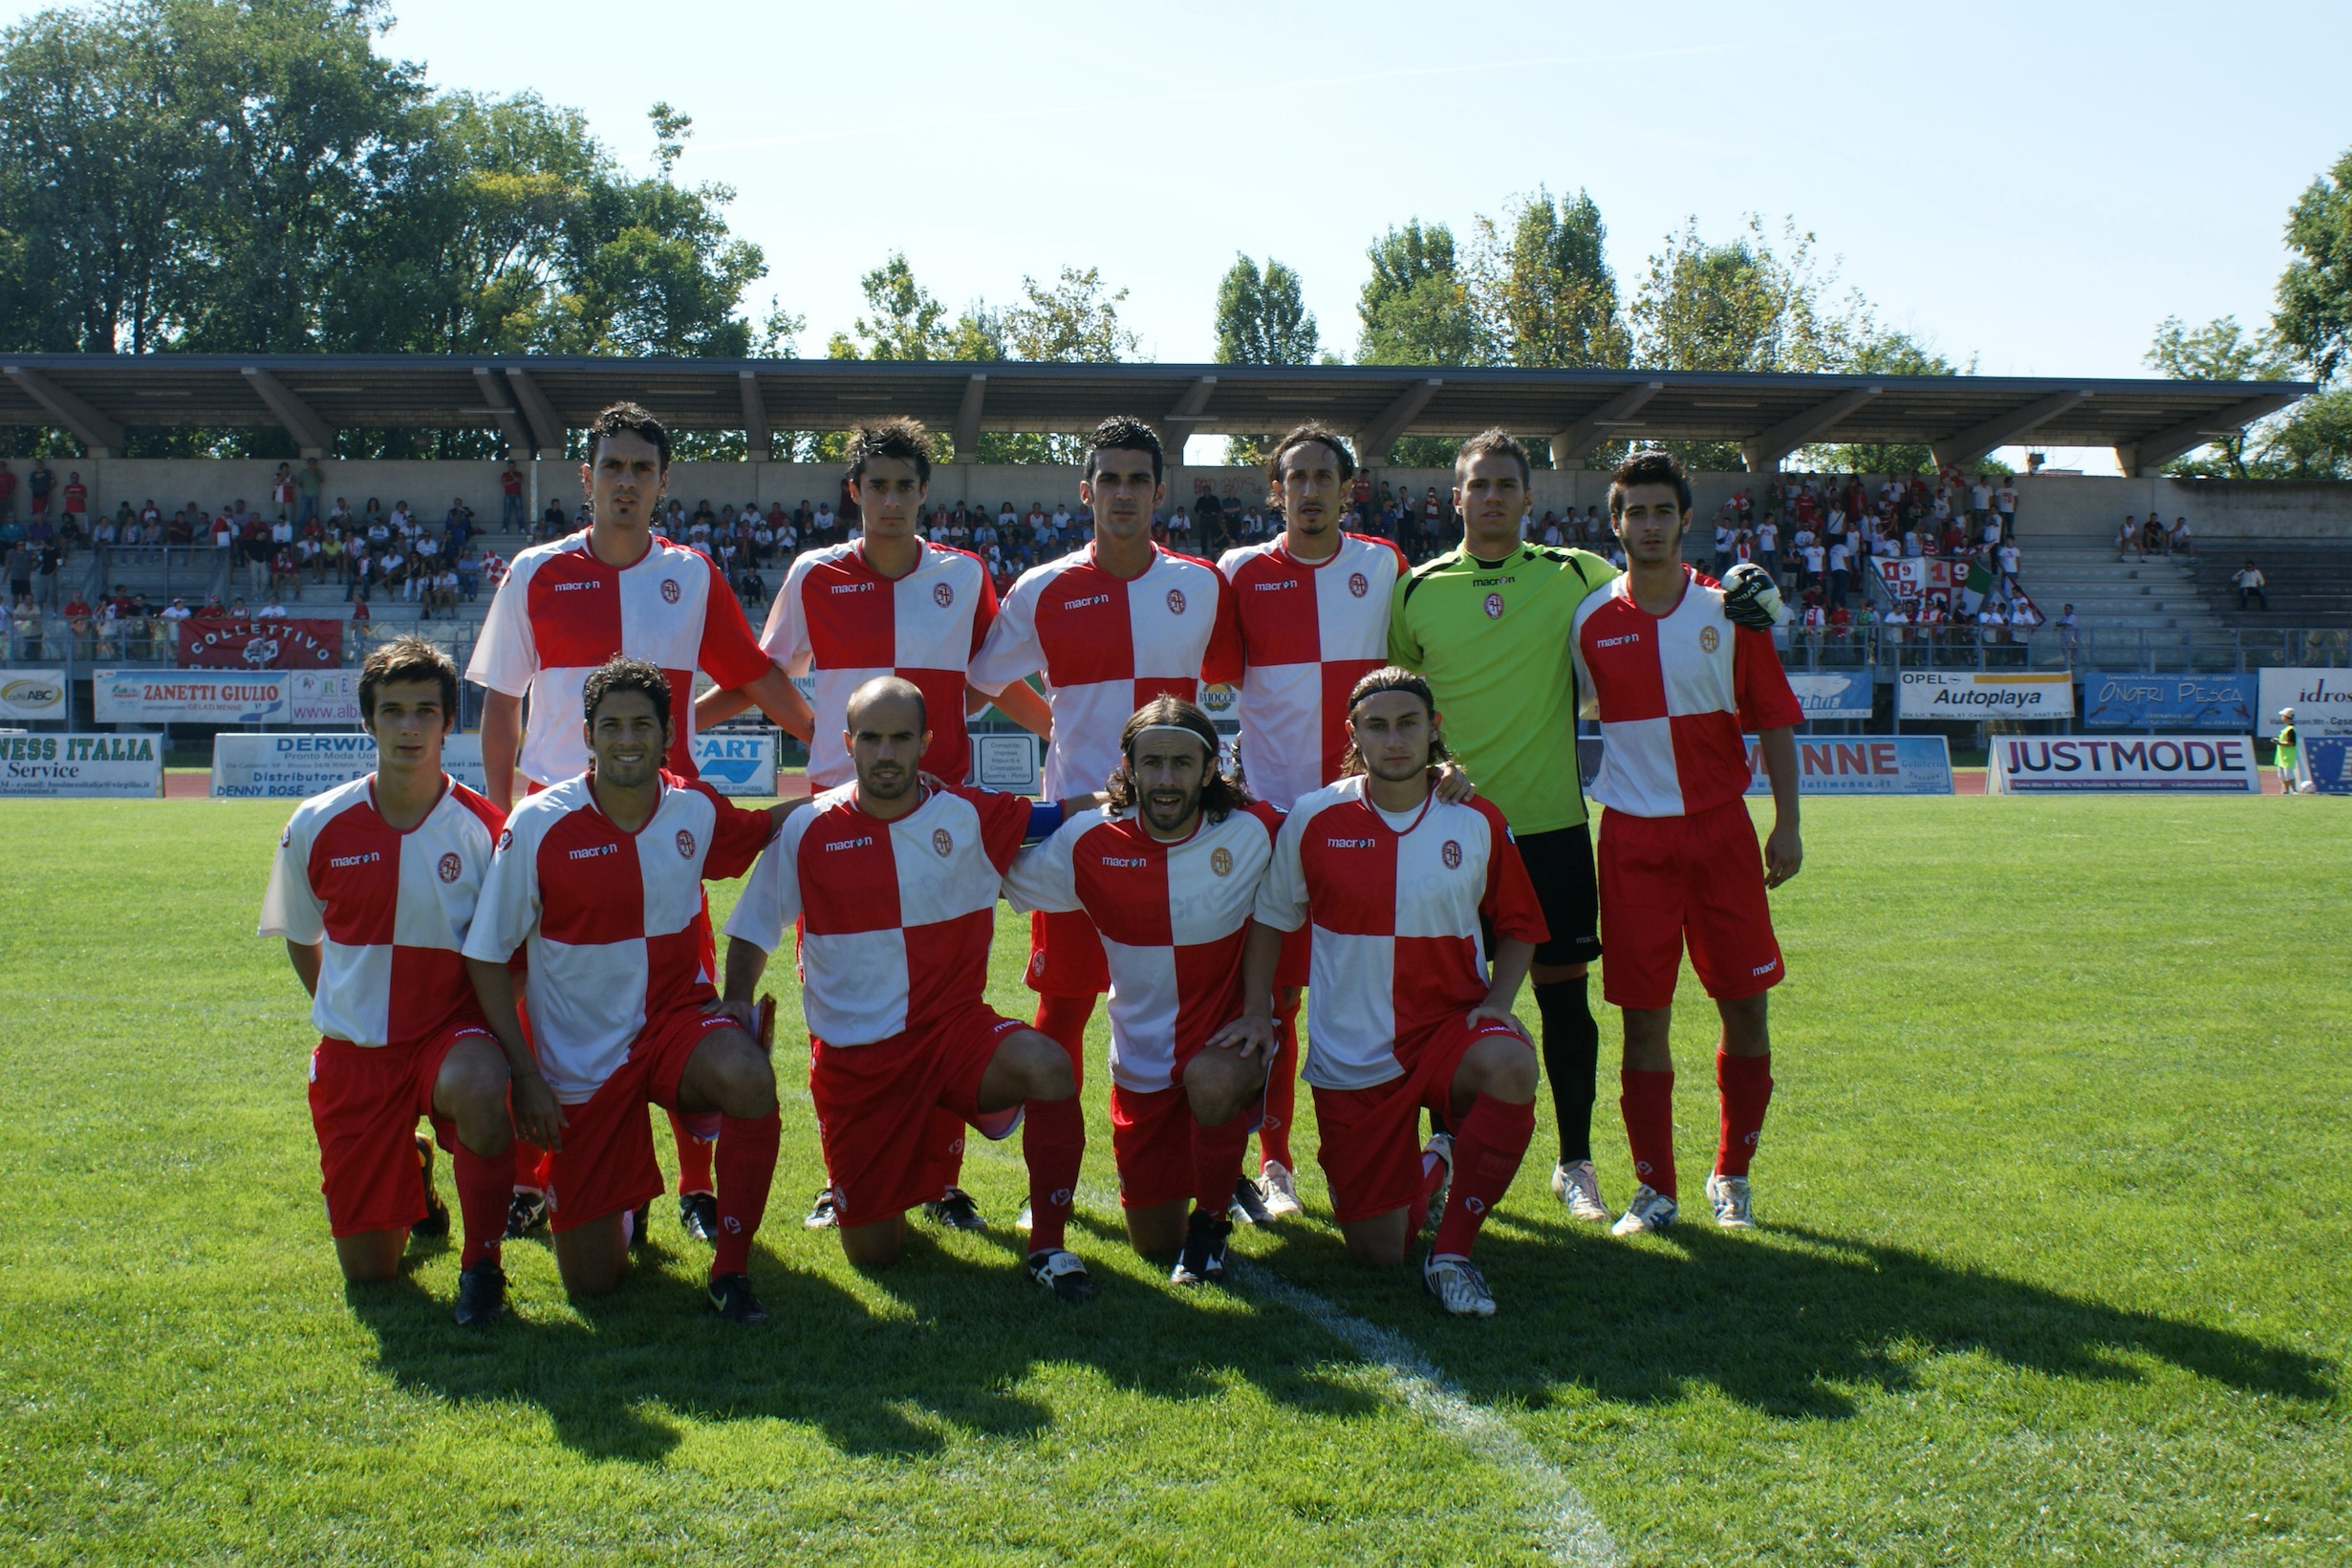 La formazione della Rimini Calcio 2010 2011